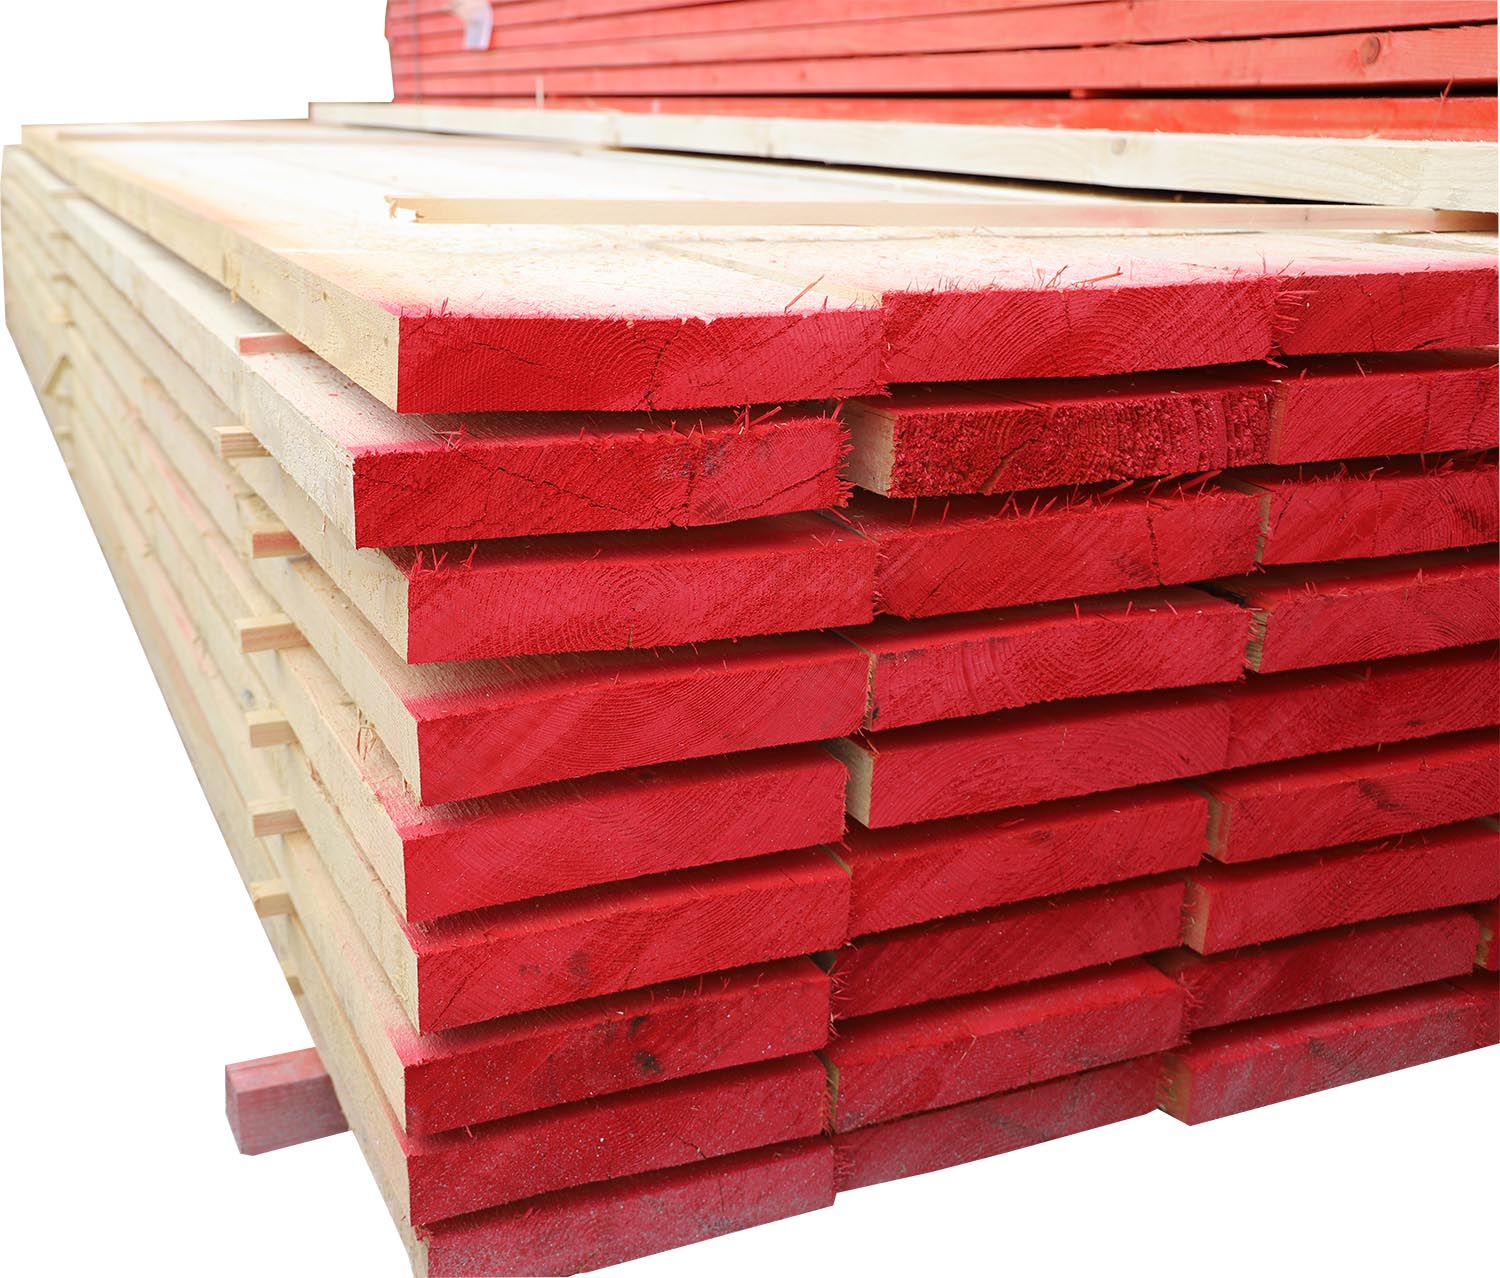 Holzbohle S10 gekappt, gestempelt, roh, rot markiert 50x280mm, 4,5m